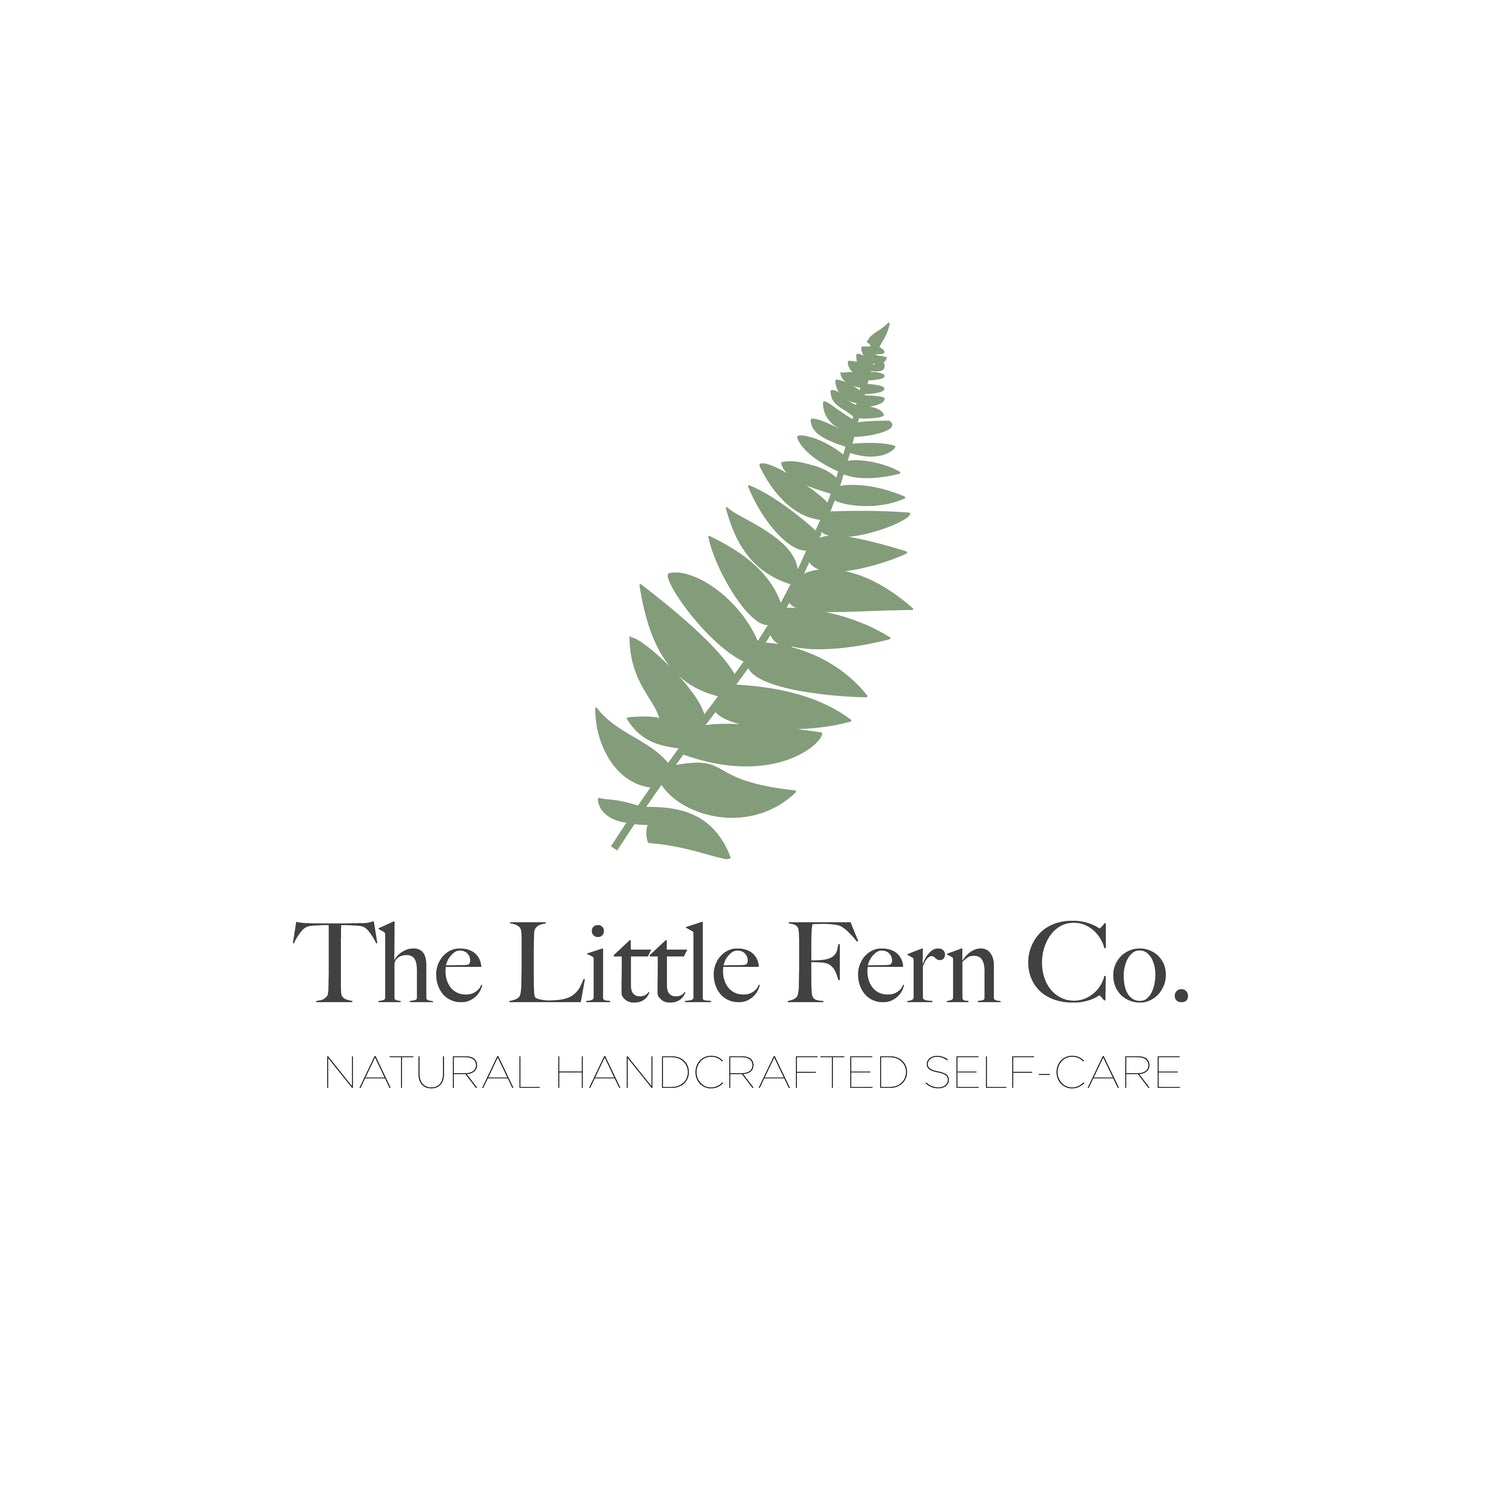 The Little Fern Co